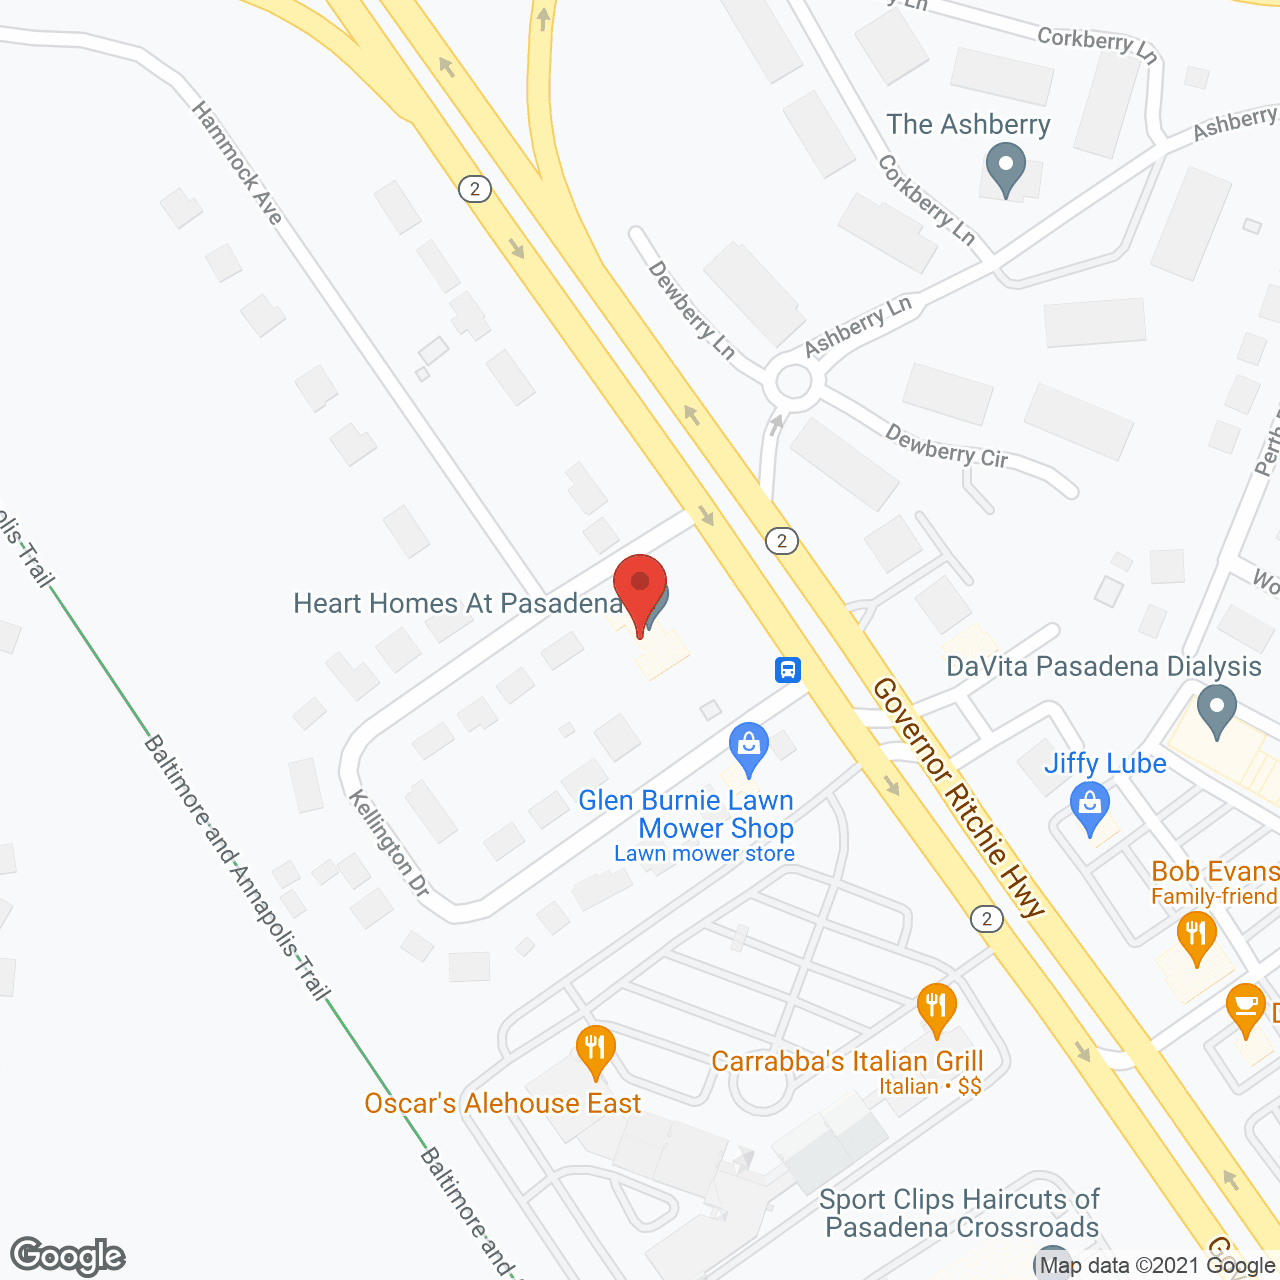 HeartHomes at Pasadena in google map